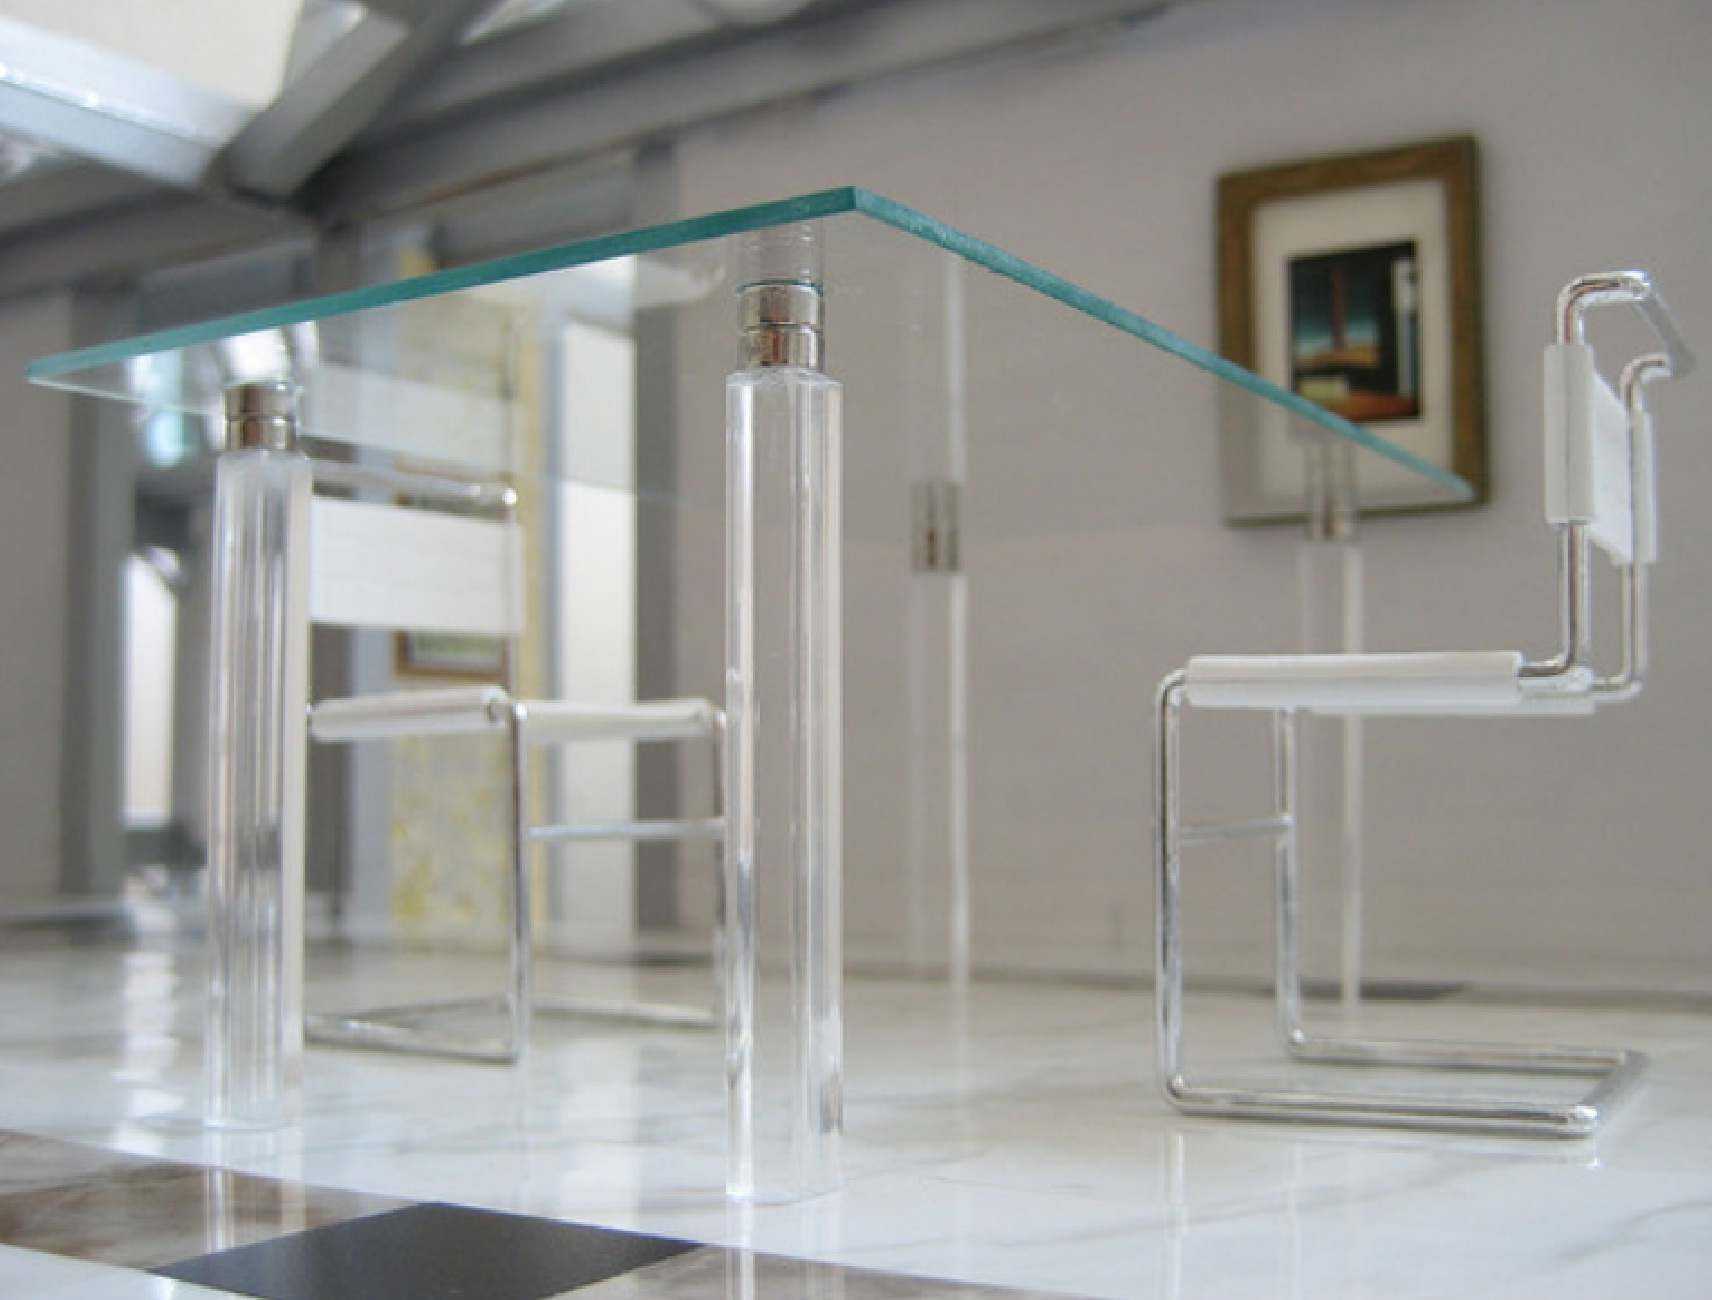 vetro trasparente nell'arredamento della casa